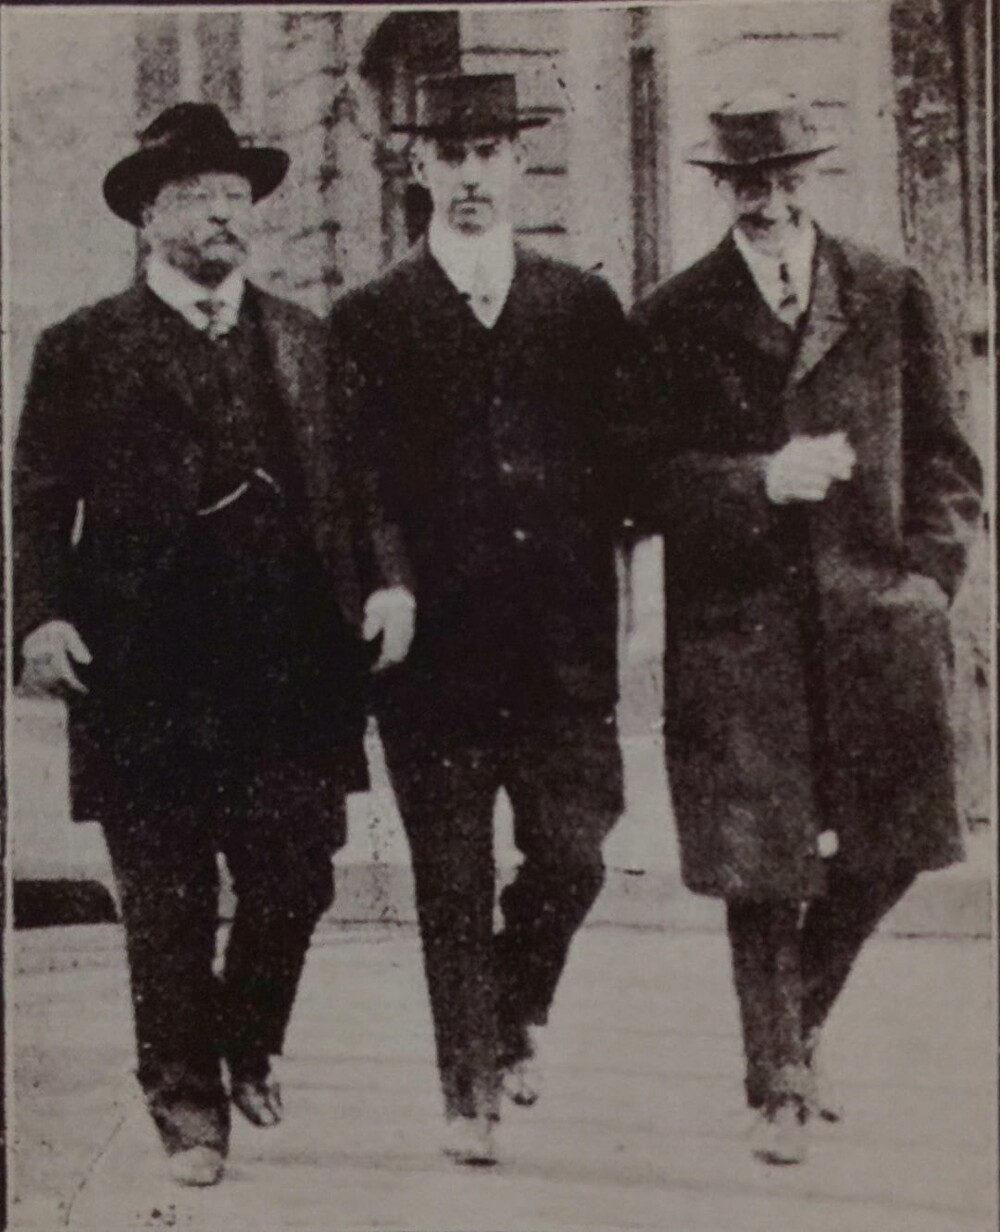 4. Единственная известная фотография президентов Теодора и Франклина Рузвельта вместе, 1915 год